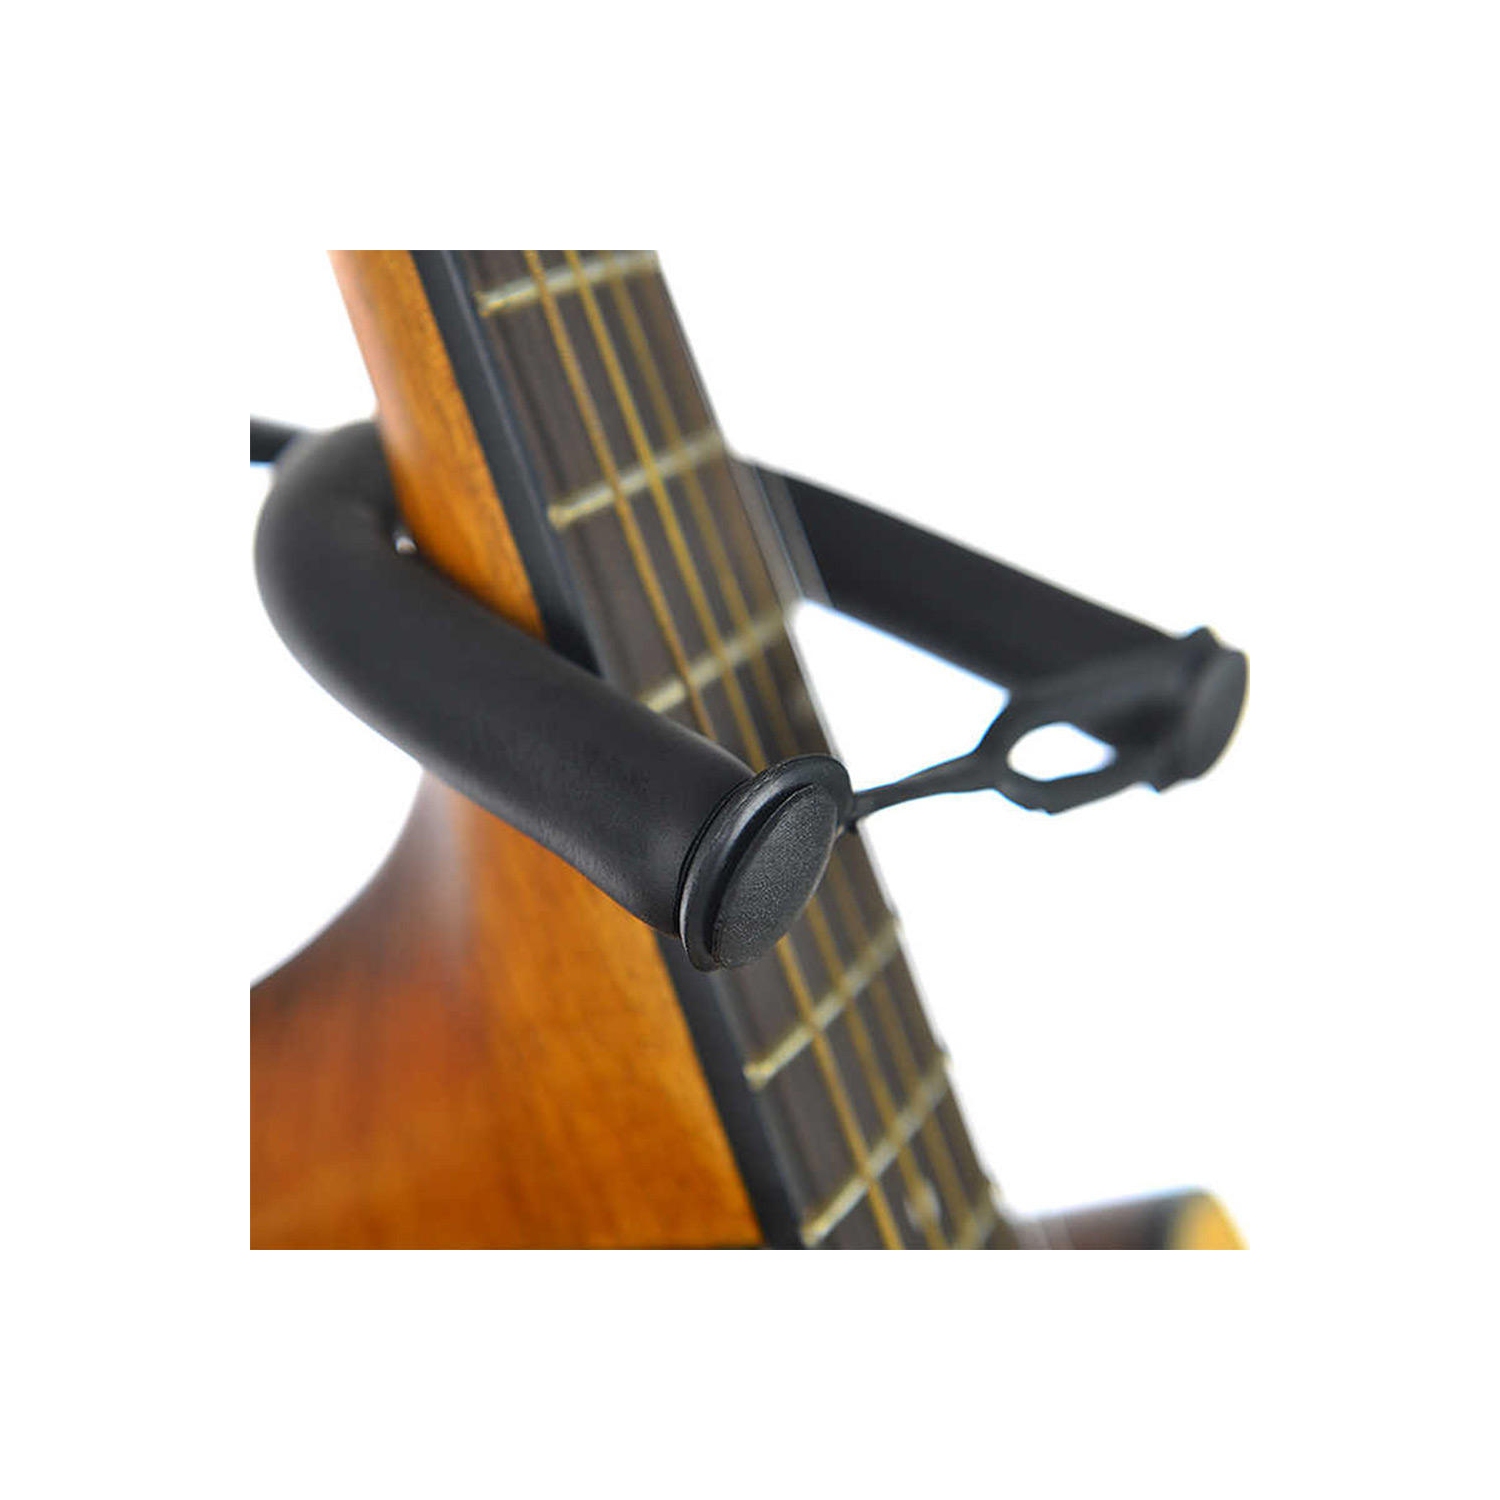 Support de support de guitare trépied pliable avec sangle de sécurité pour  guitare classique électrique acoustique ou basse 